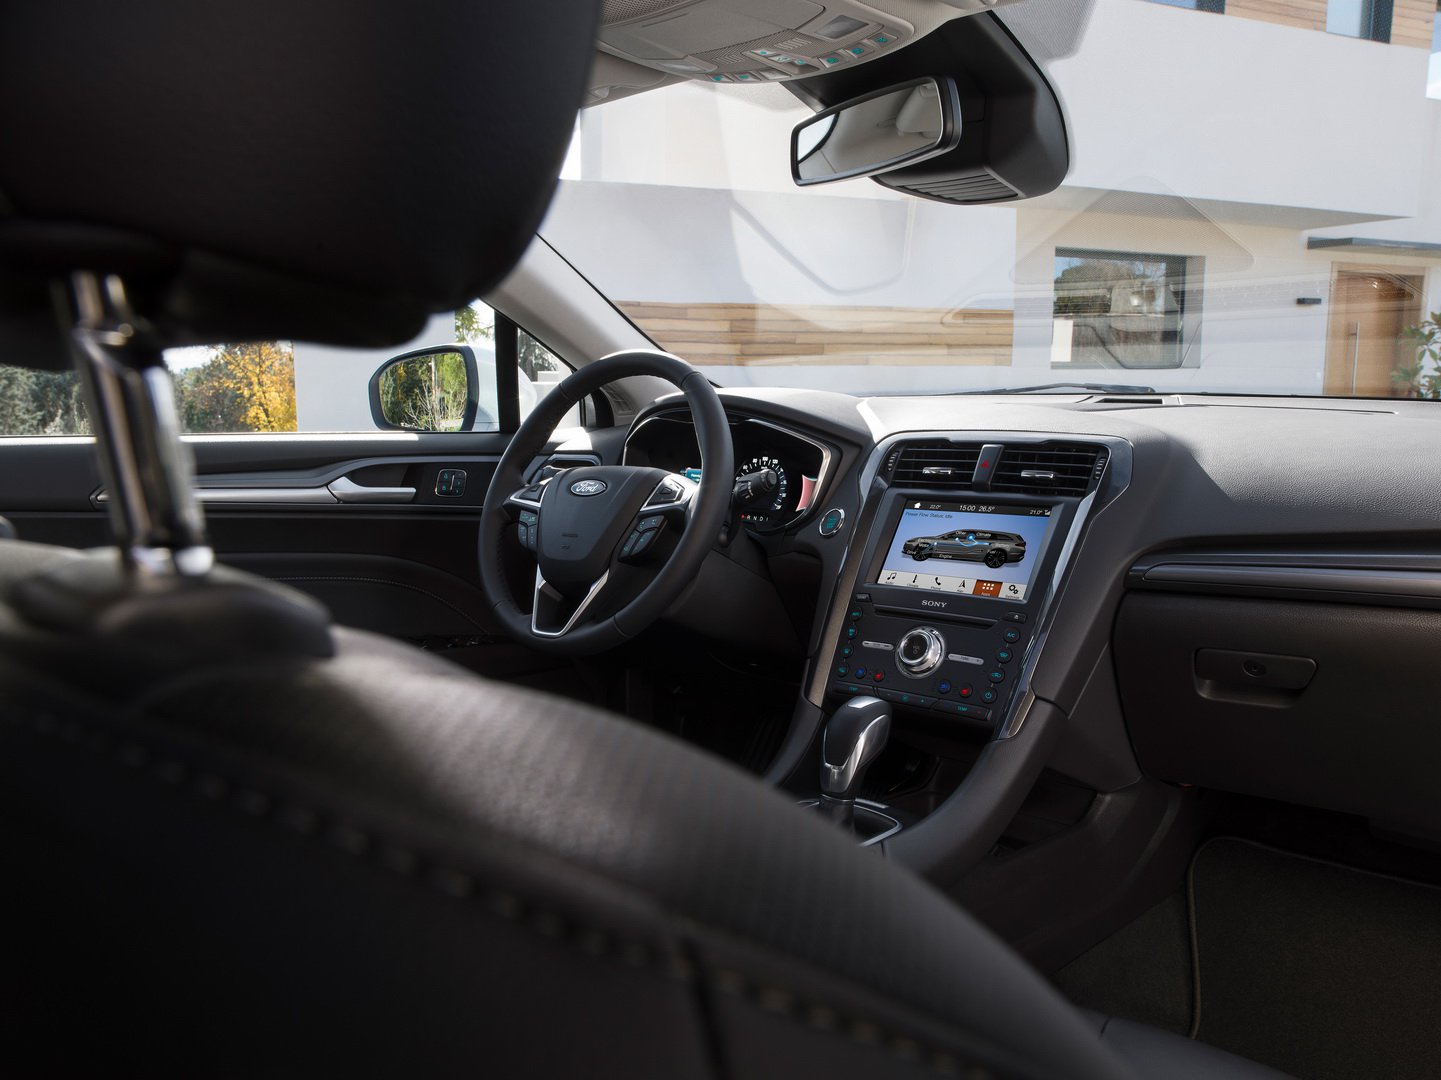 2019 Ford Mondeo tanıtıldı: Station Wagon'da yeni hibrit seçeneği